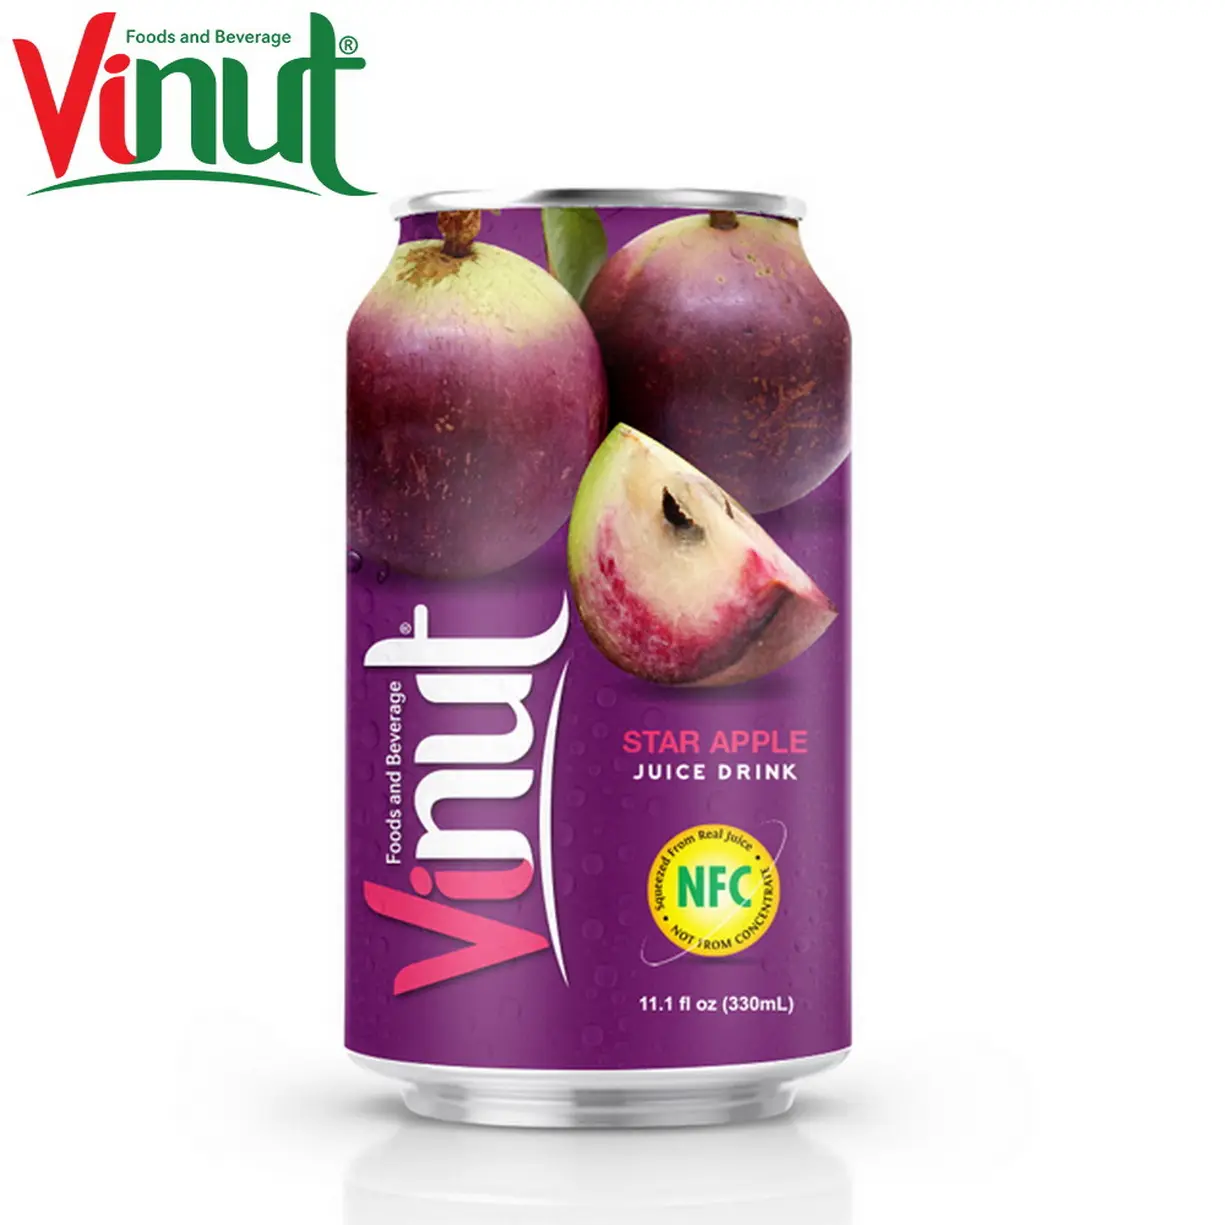 Vinut 330ml Sao Nước táo uống với thành phần tự nhiên nhà phân phối thiết kế miễn phí nhãn của bạn nước ép trái cây thực